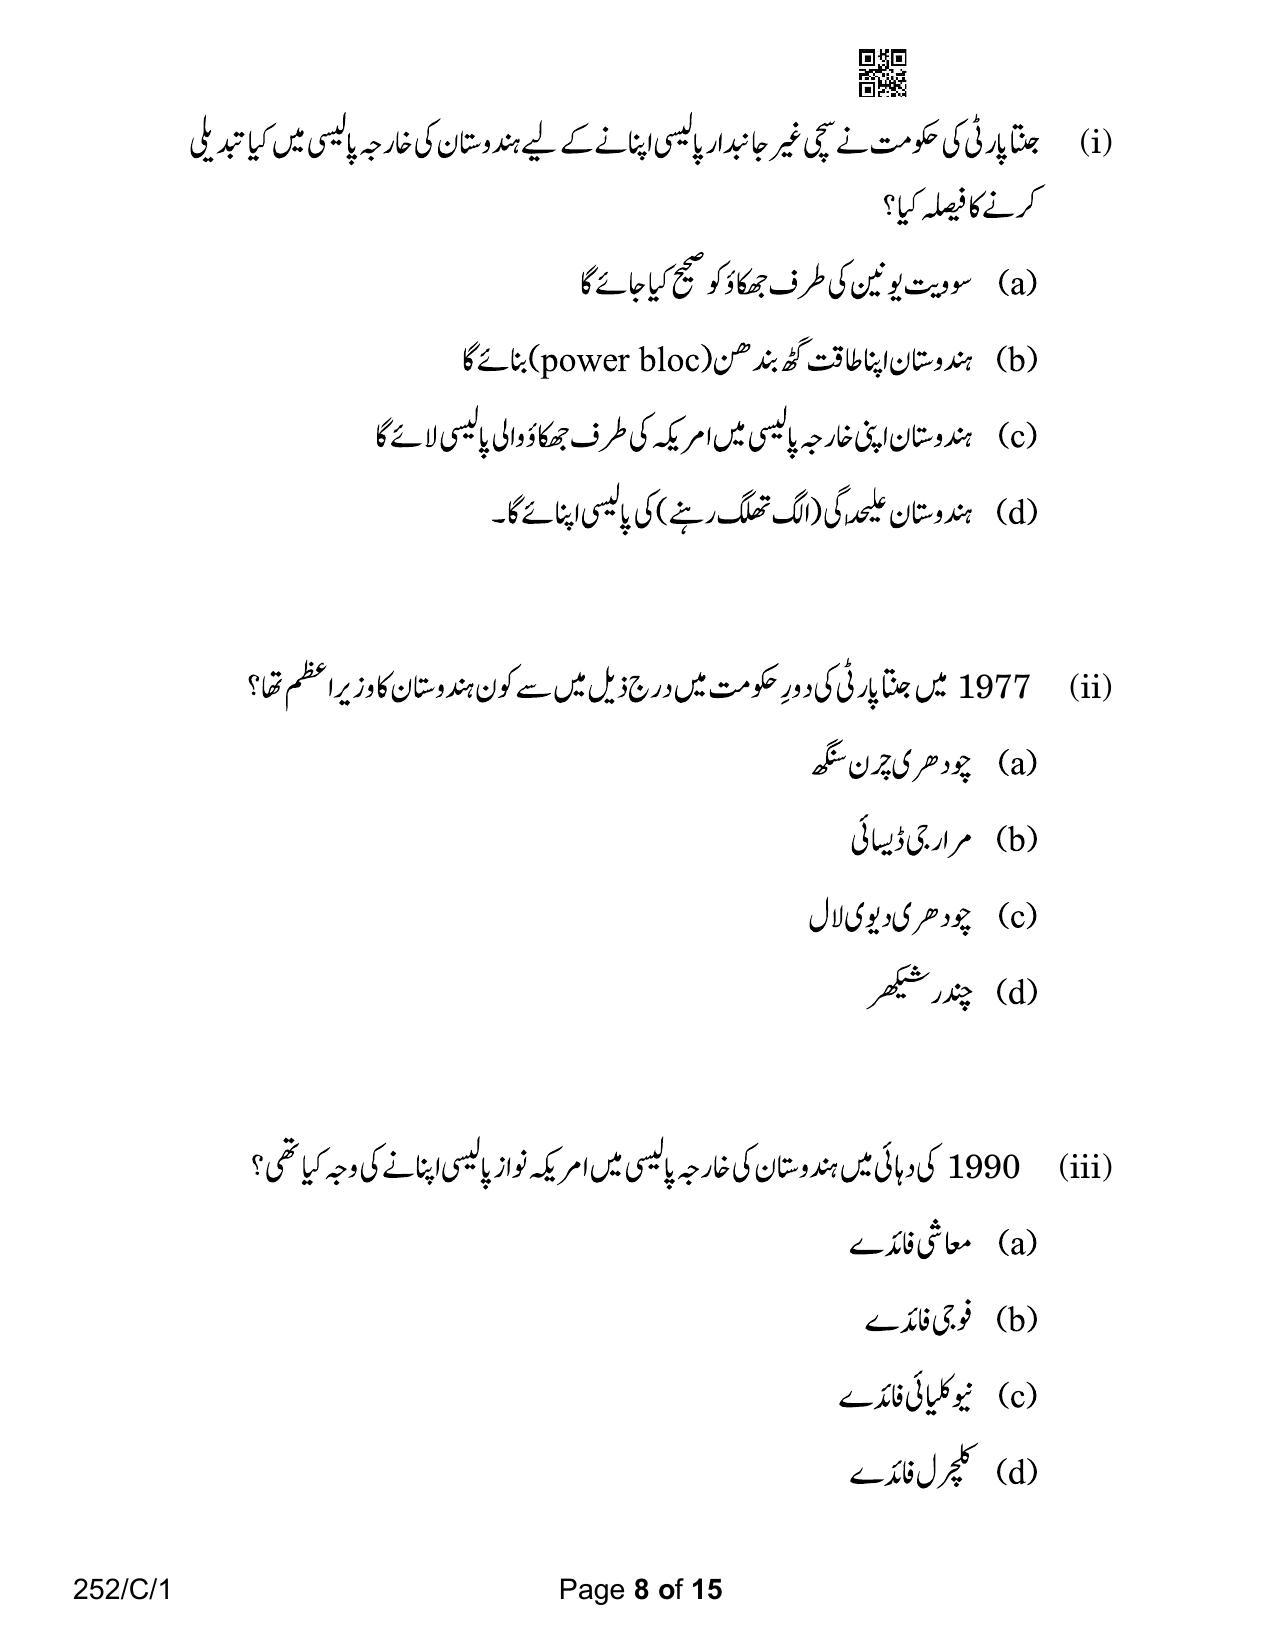 CBSE Class 12 252-1 Political Science Urdu Version 2023 (Compartment) Question Paper - Page 8